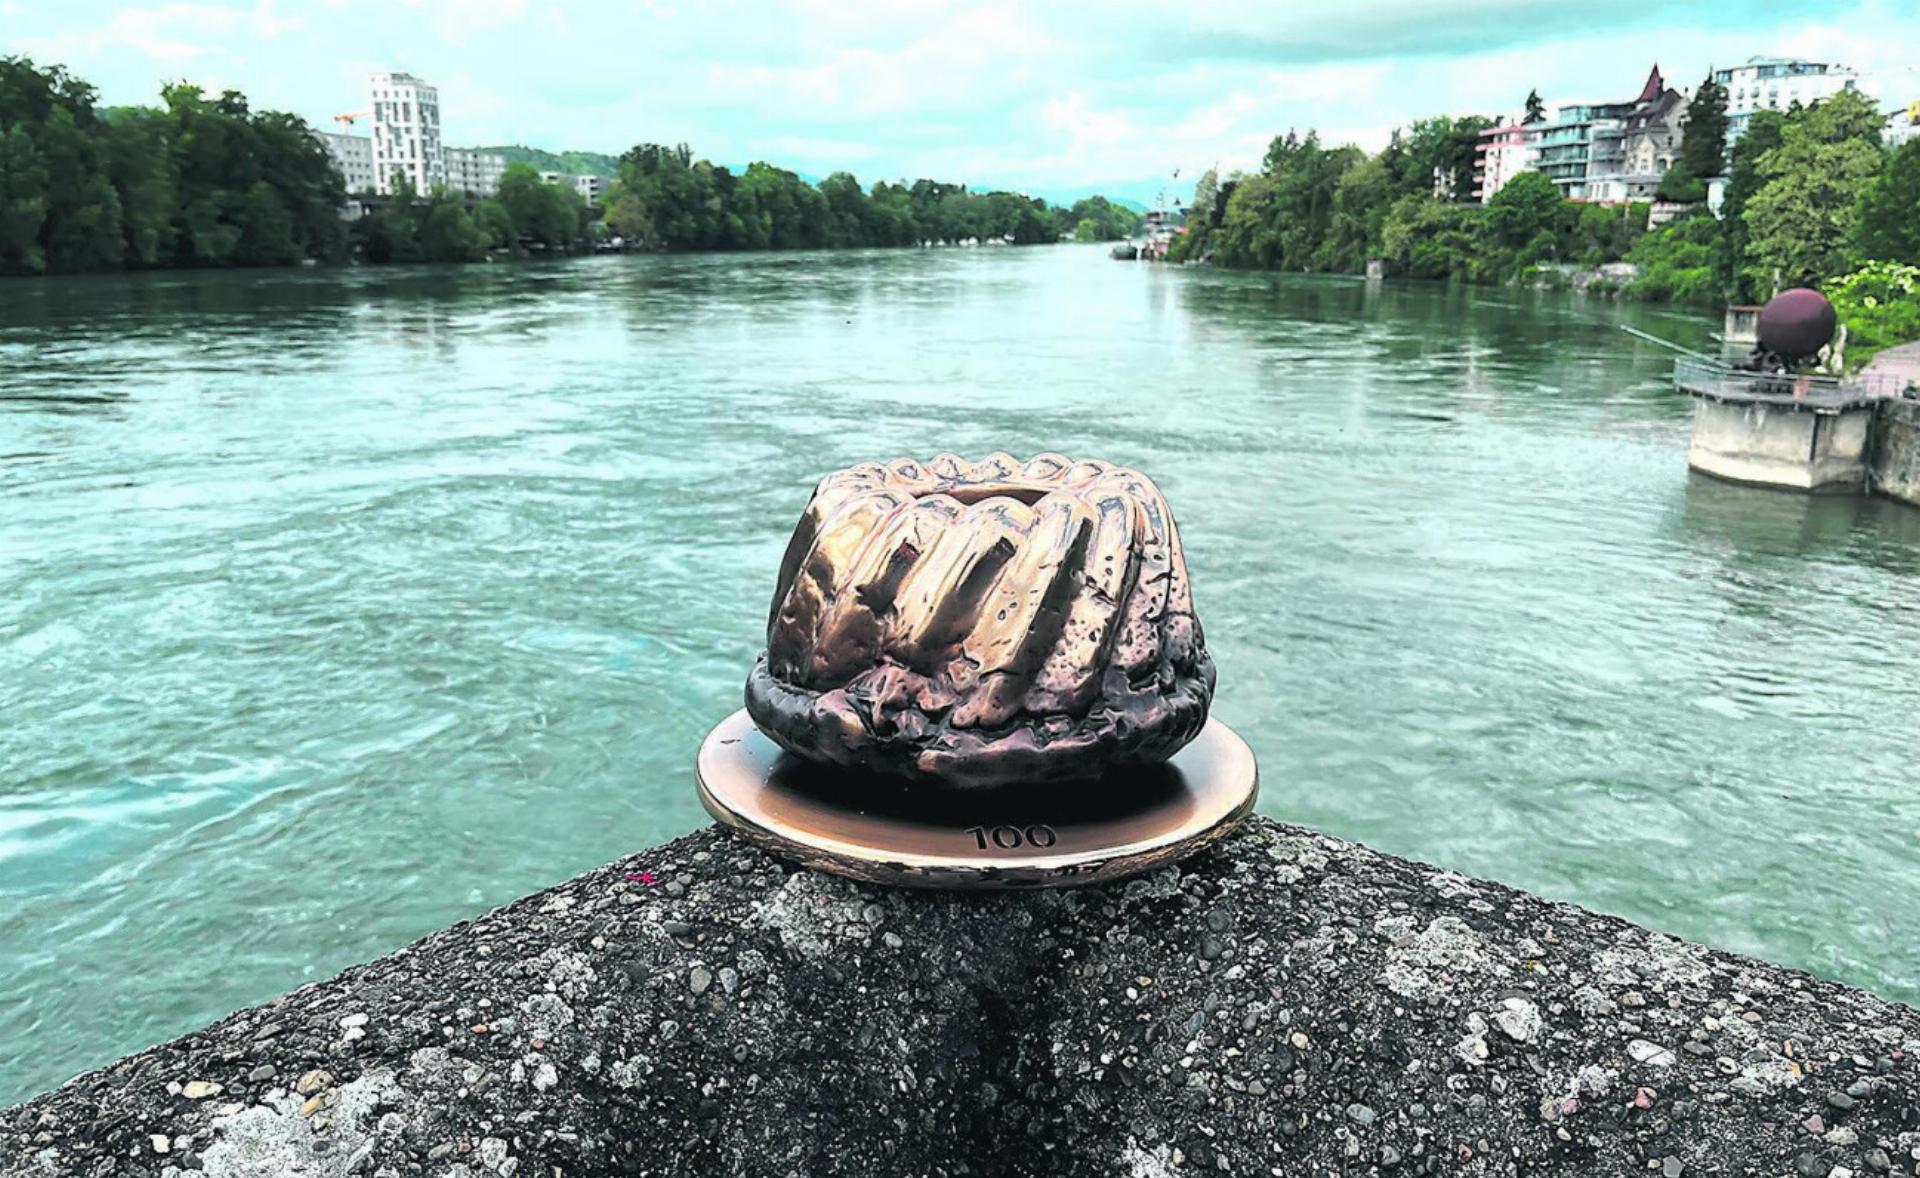 Süsse Kunst aus Bronze: Der Gugelhupf soll auch die grenzüberschreitende Freundschaft symbolisieren. Fotos: Valentin Zumsteg